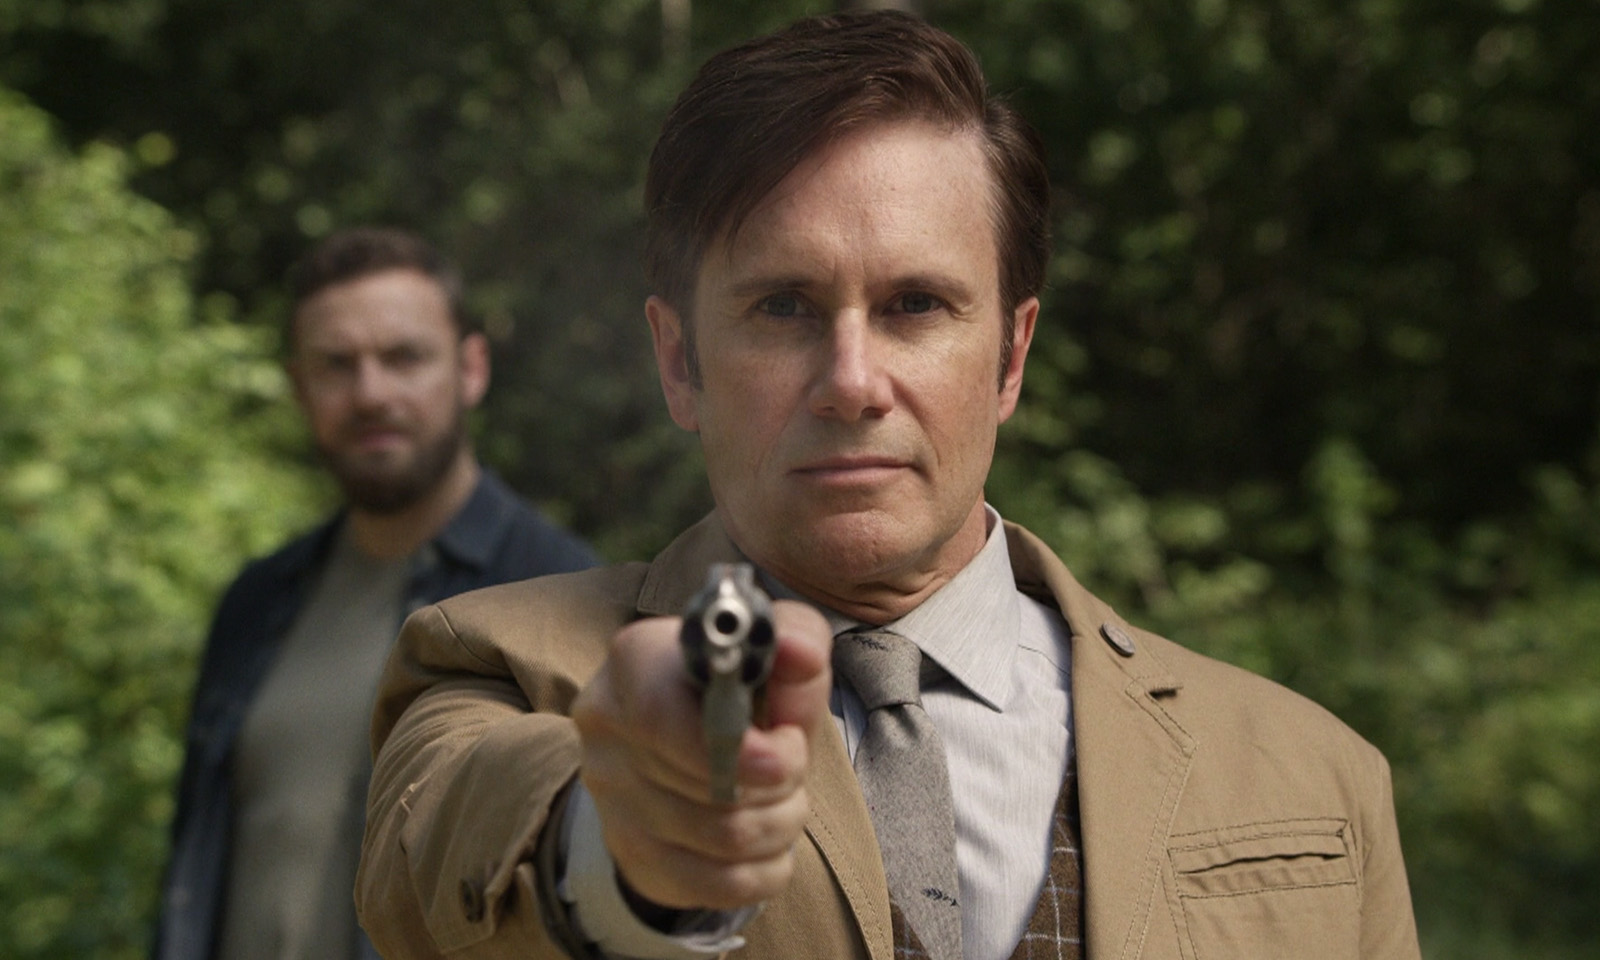 Lance apontando sua arma com Aaron ao fundo em cena do episódio 12 da 11ª temporada de The Walking Dead.